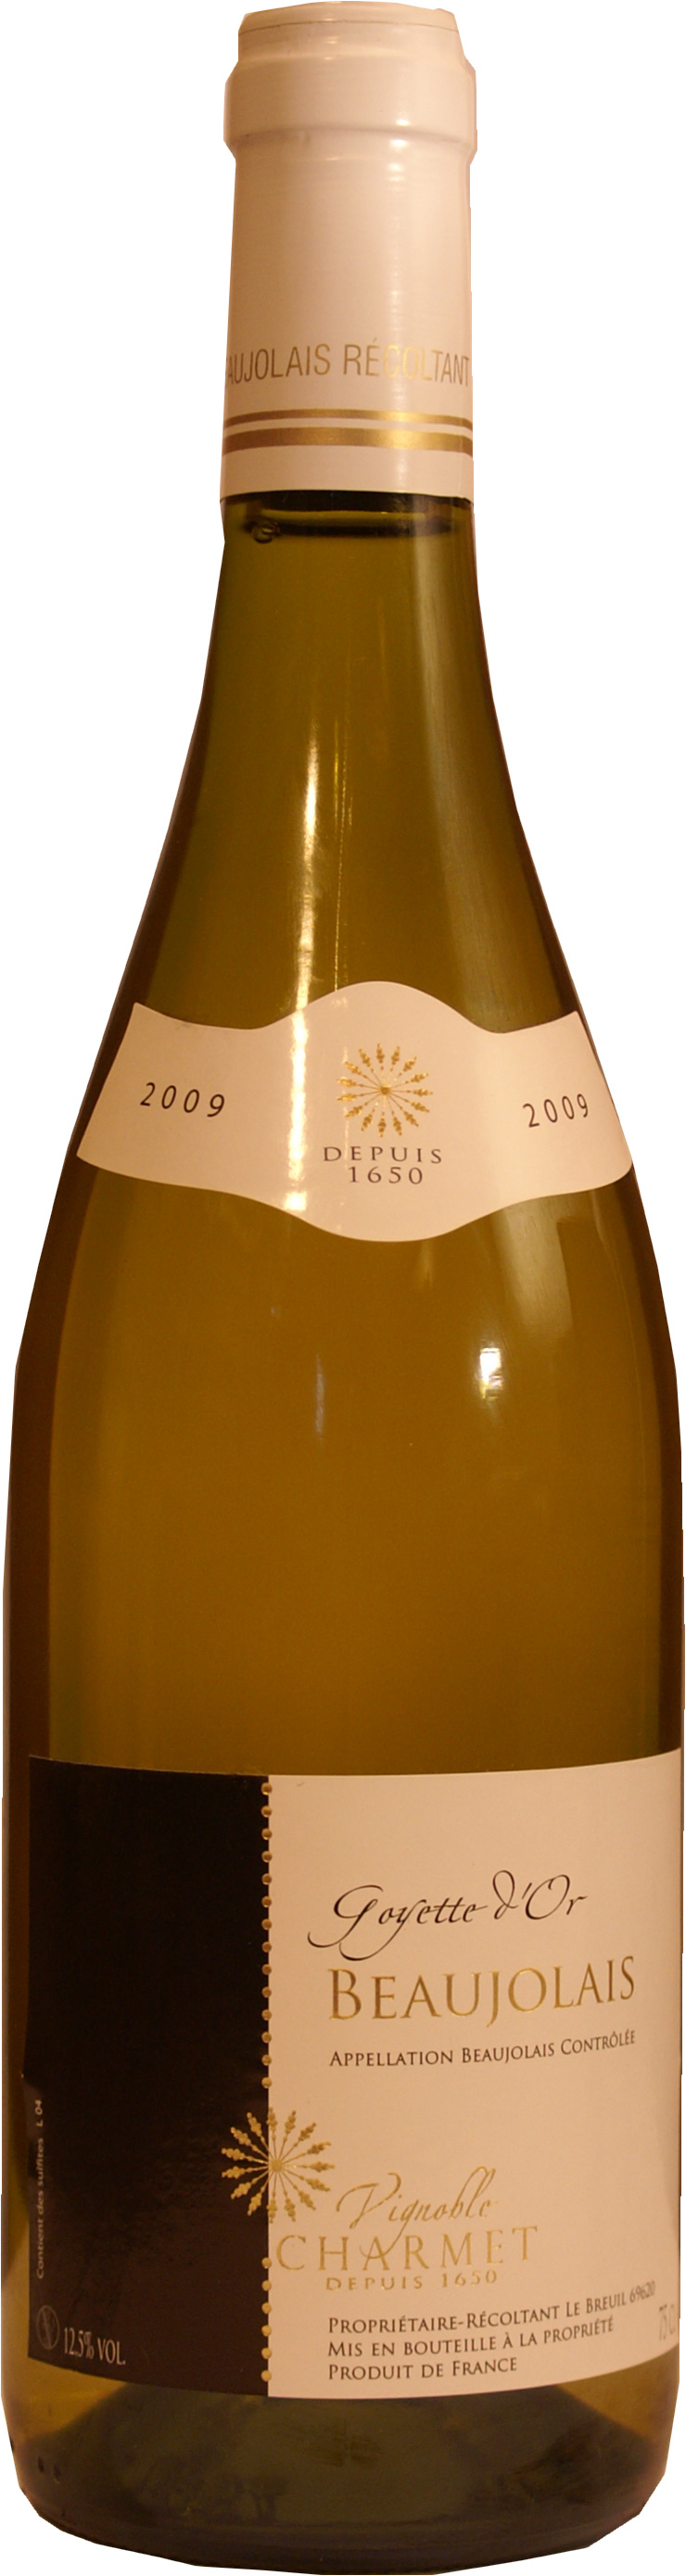 Vignoble Charmet Coteaux Bourguignons Chardonnay Blanc 2016